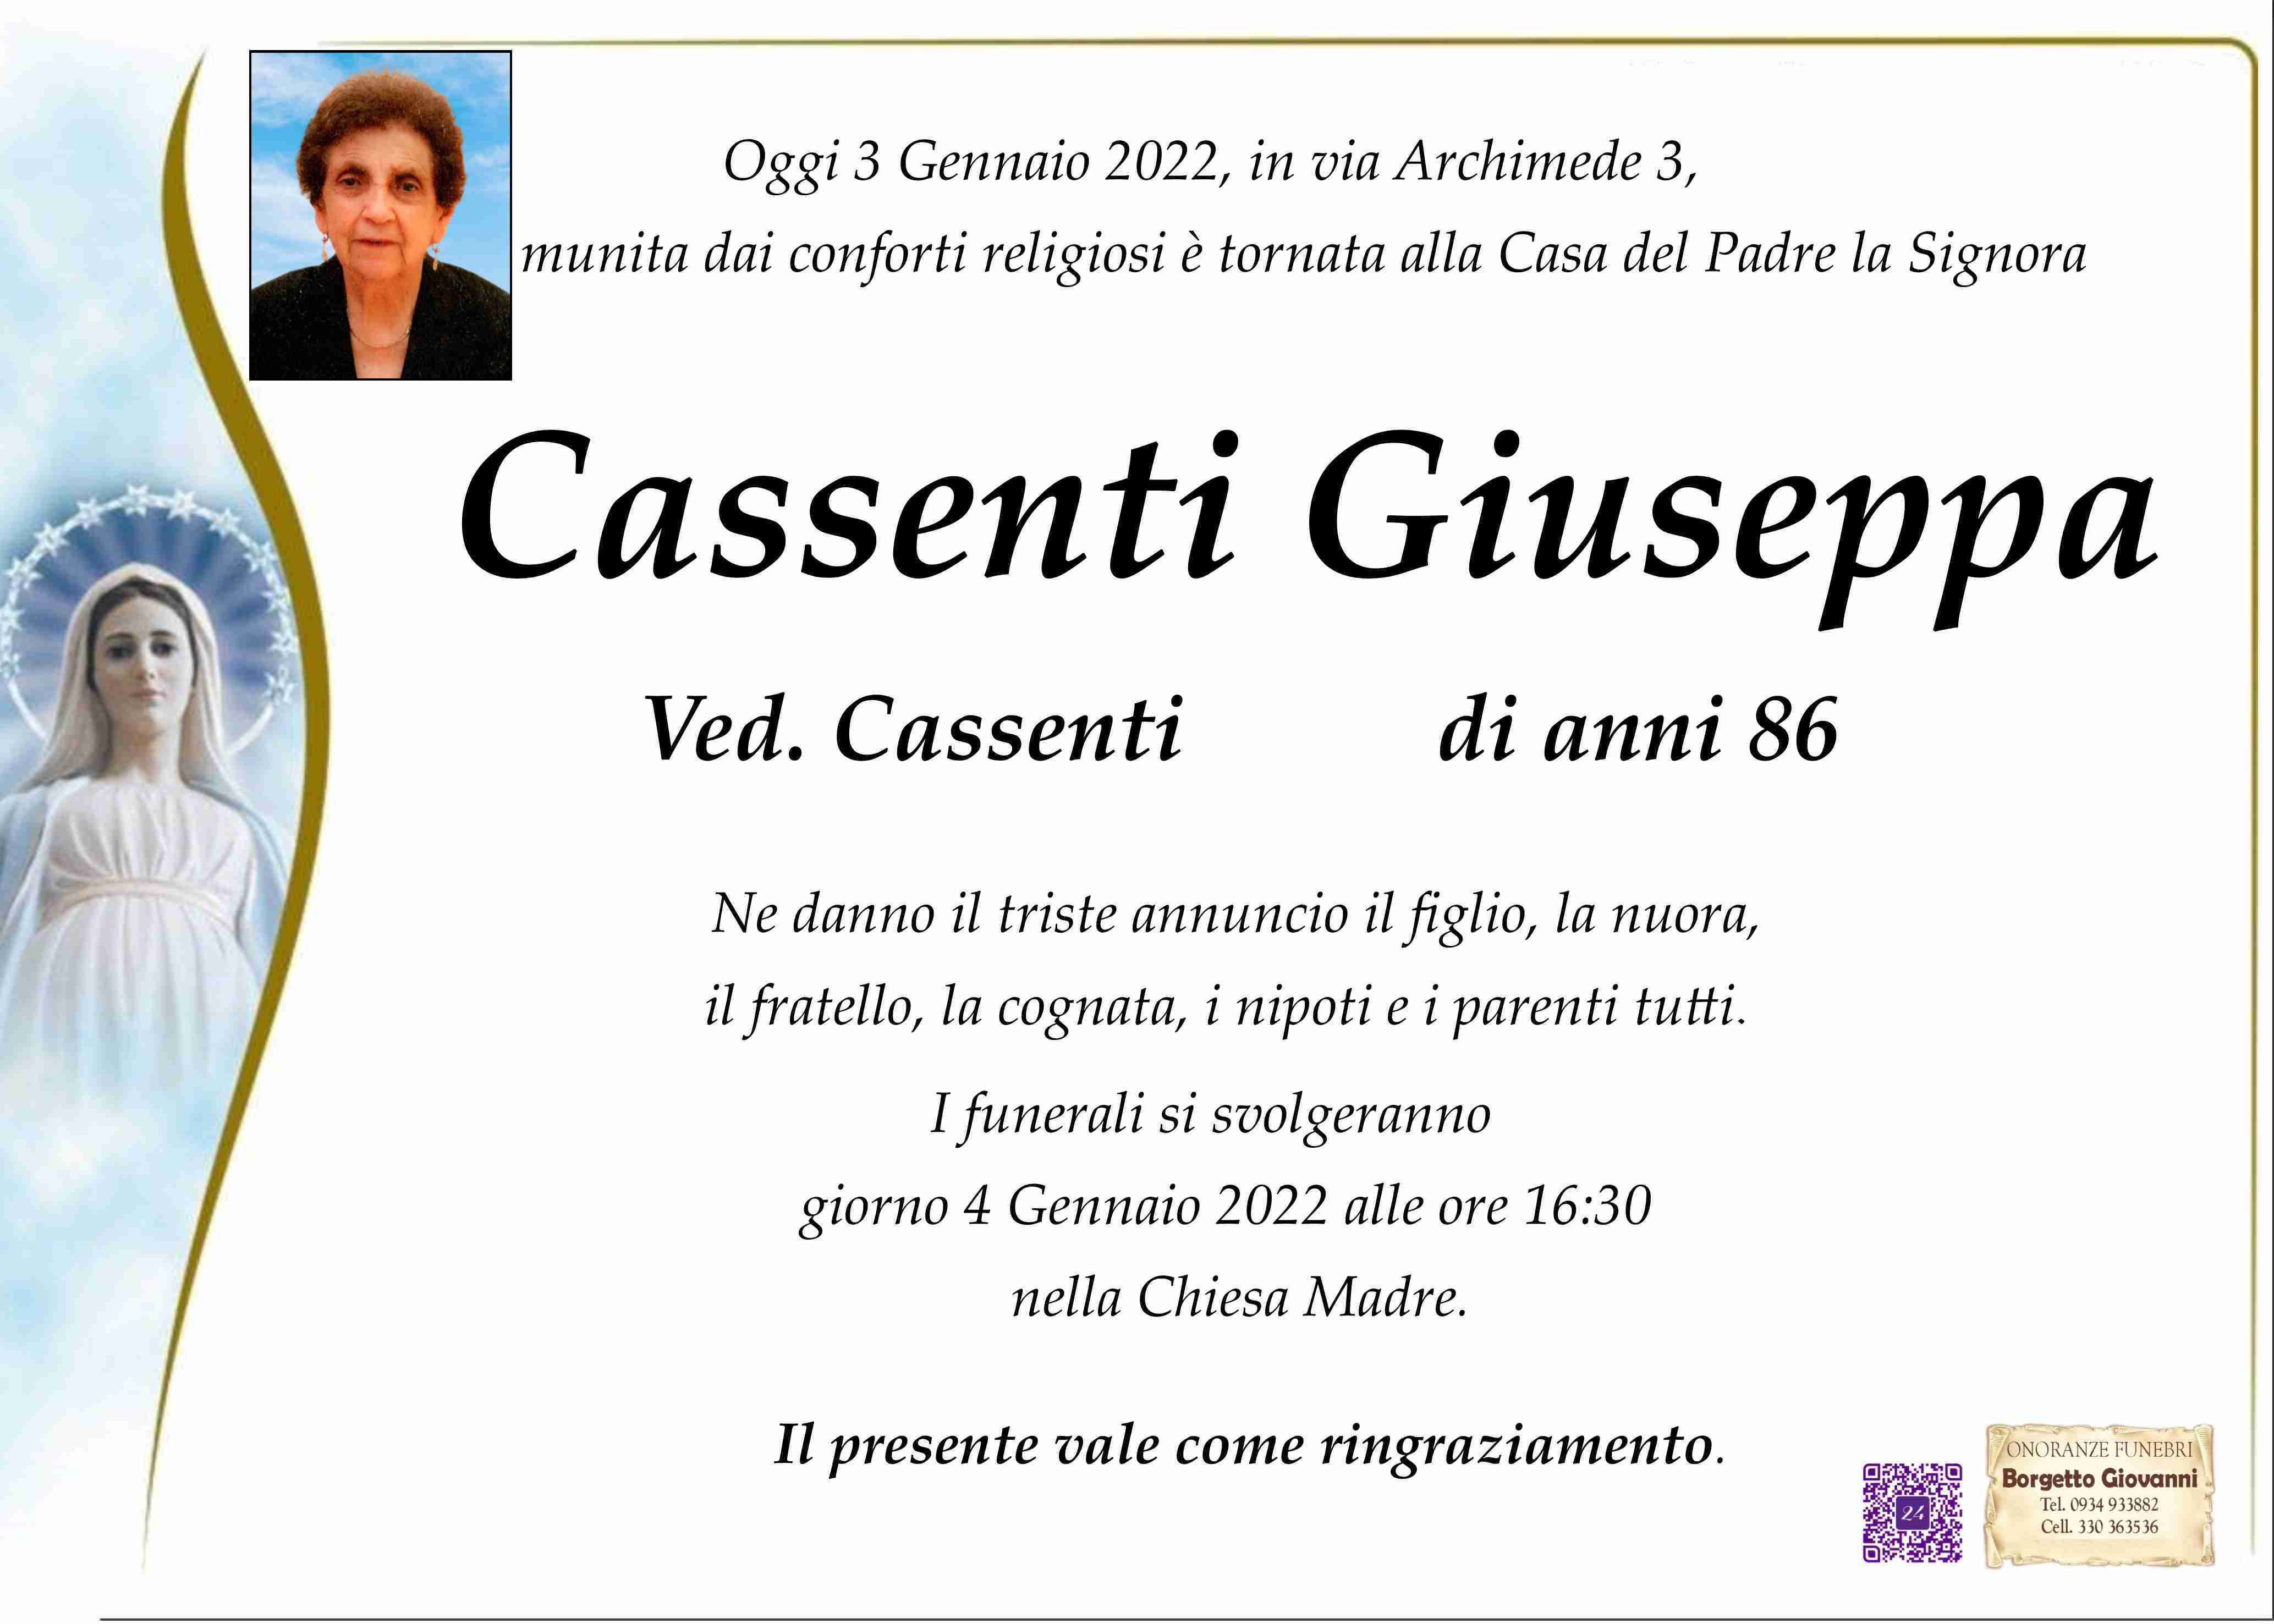 Giuseppa Cassenti